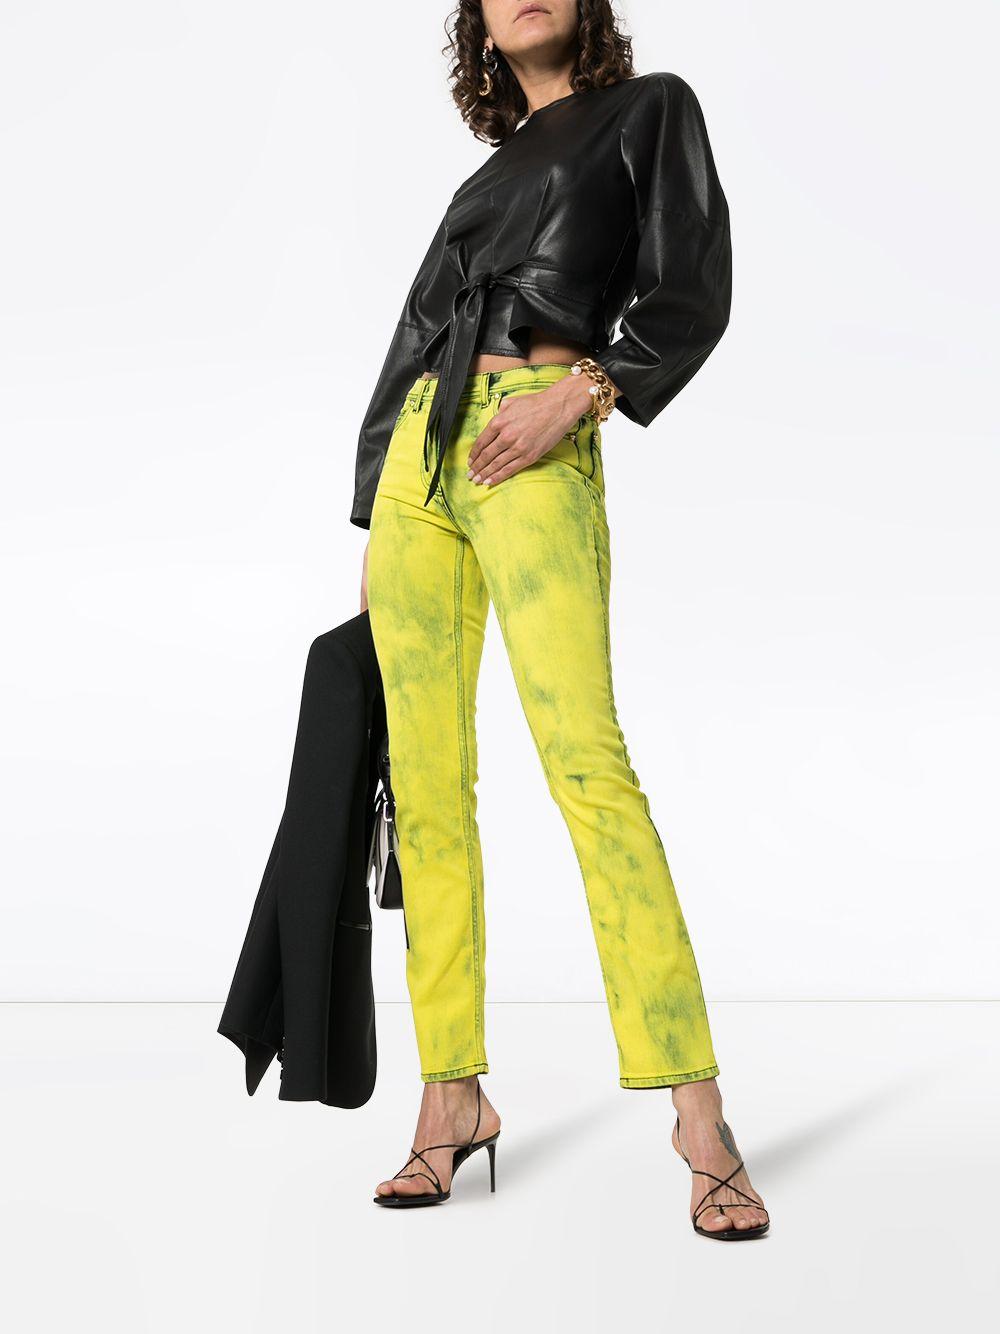 Versace Gelbe Acid Wash Denim Skinny Jeans mit Logo-Label

Diese säuregelbe Skinny-Jeans mit Logo-Label von Versace wurde in Italien fachmännisch aus Stretch-Denim gefertigt. Sie verfügt über den üblichen Hosenschlitz und einen Knopfverschluss mit